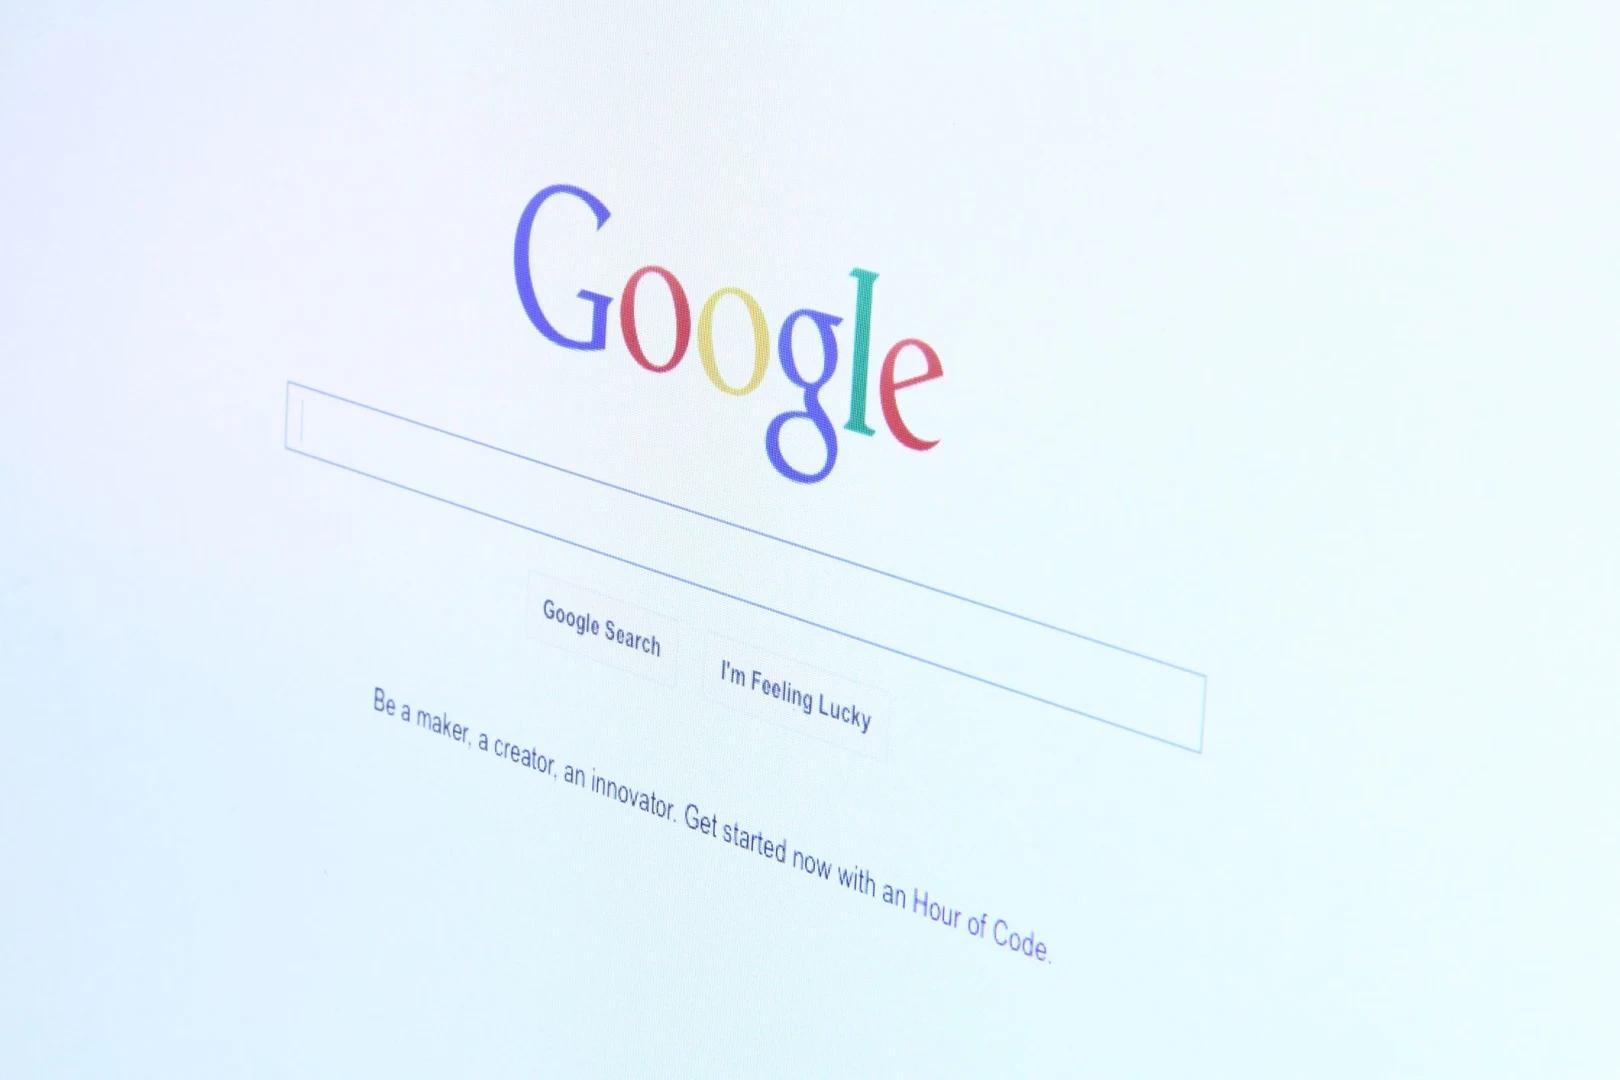 Google suppresses AFLDS